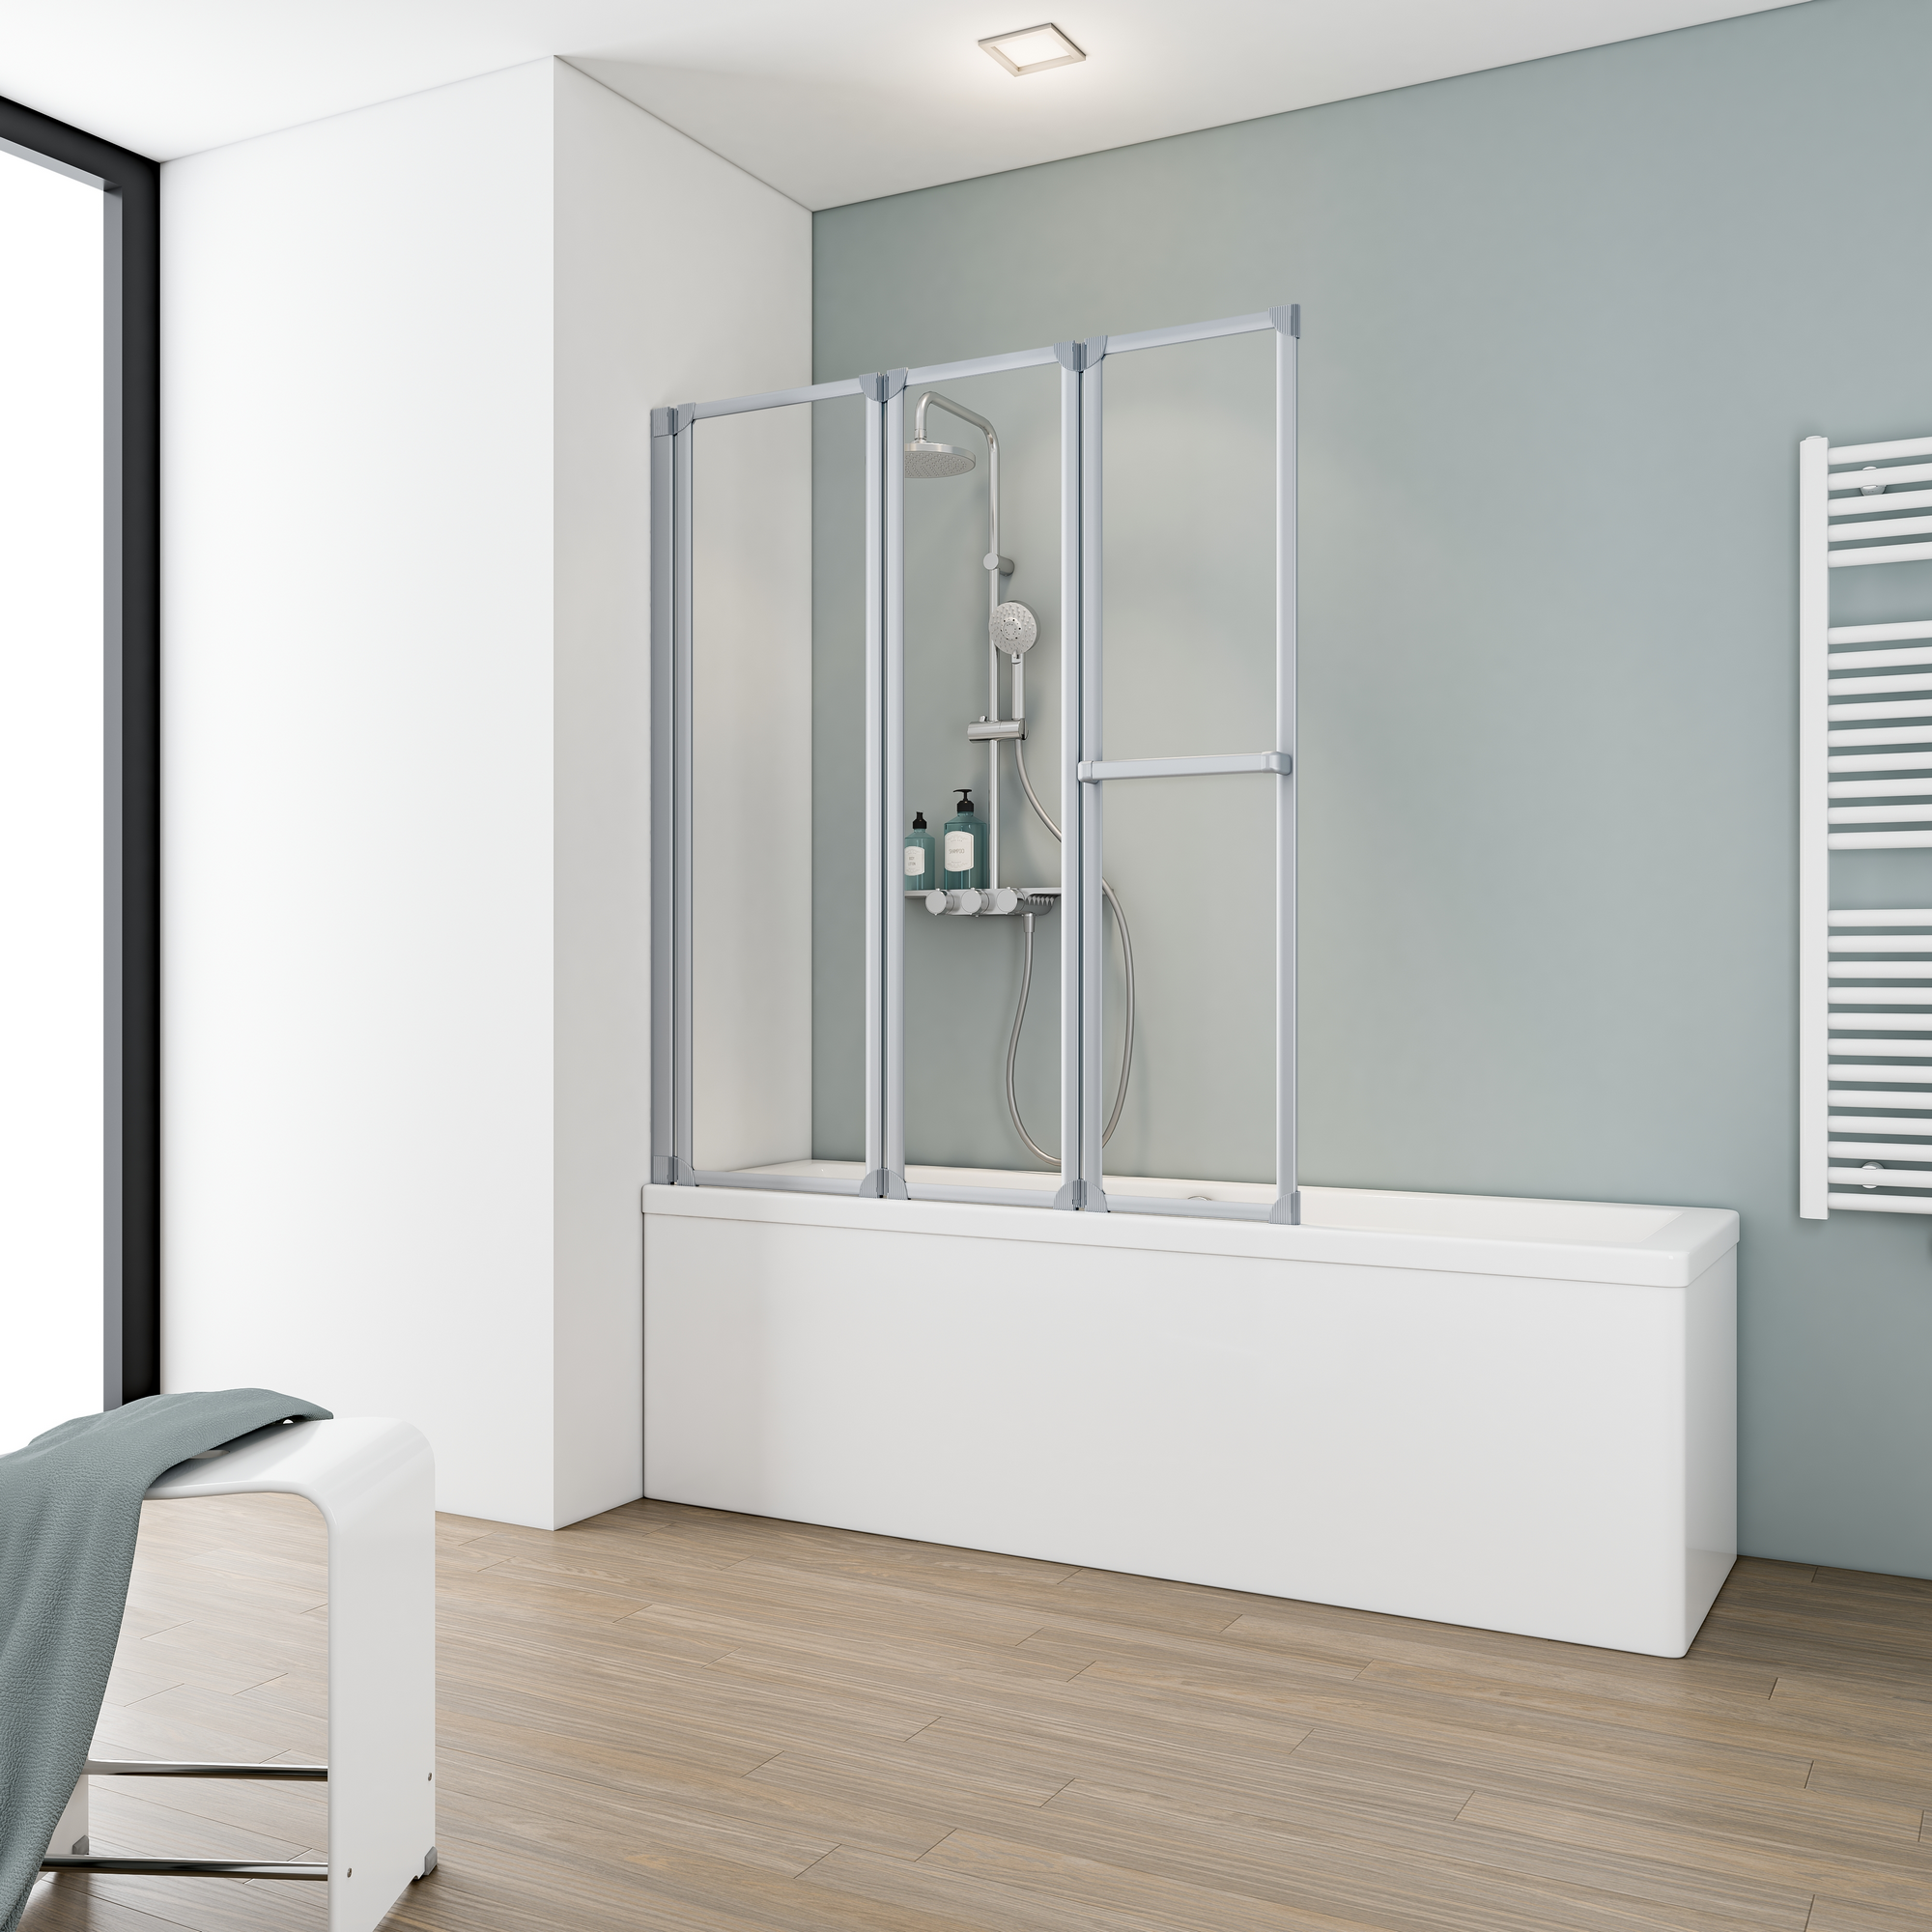 Badewannenfaltwand 'Komfort' vollgerahmt, aluminiumfarben, 127 x 140 cm, 3-teilig + product picture